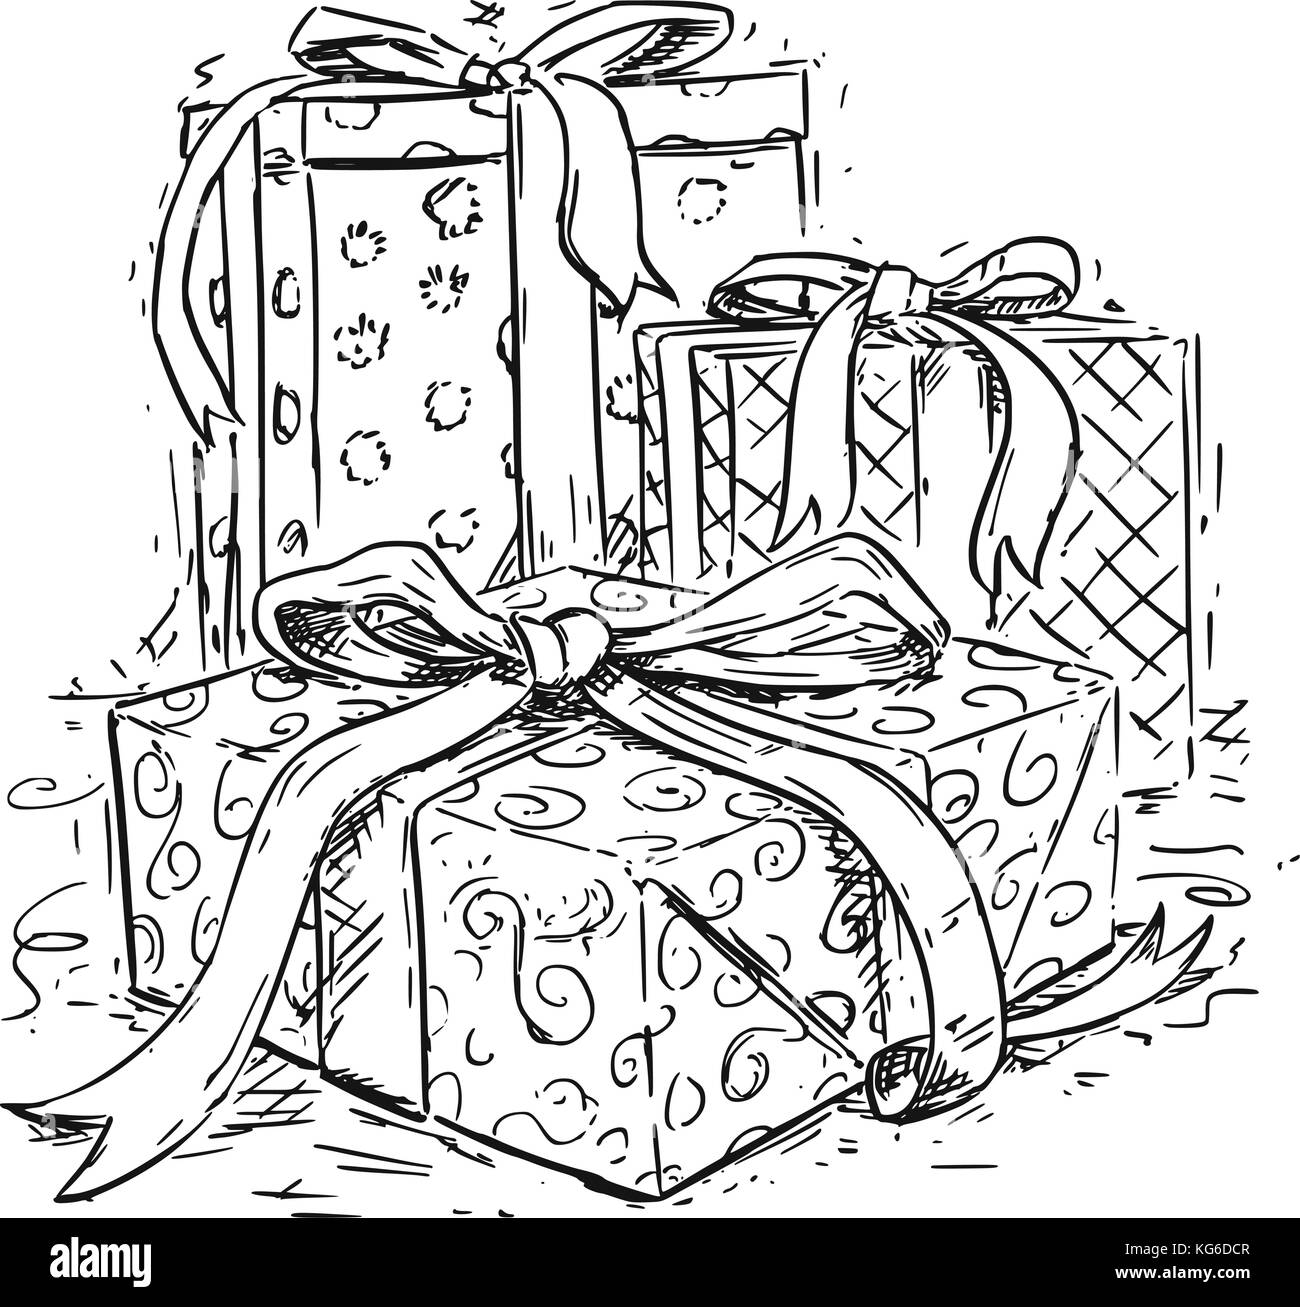 Regali Di Natale Disegni.Il Disegno Vettoriale Illustrazione Di Tre Regali Di Natale Di Scatole Con Nastro Decorativo E Wrap Immagine E Vettoriale Alamy